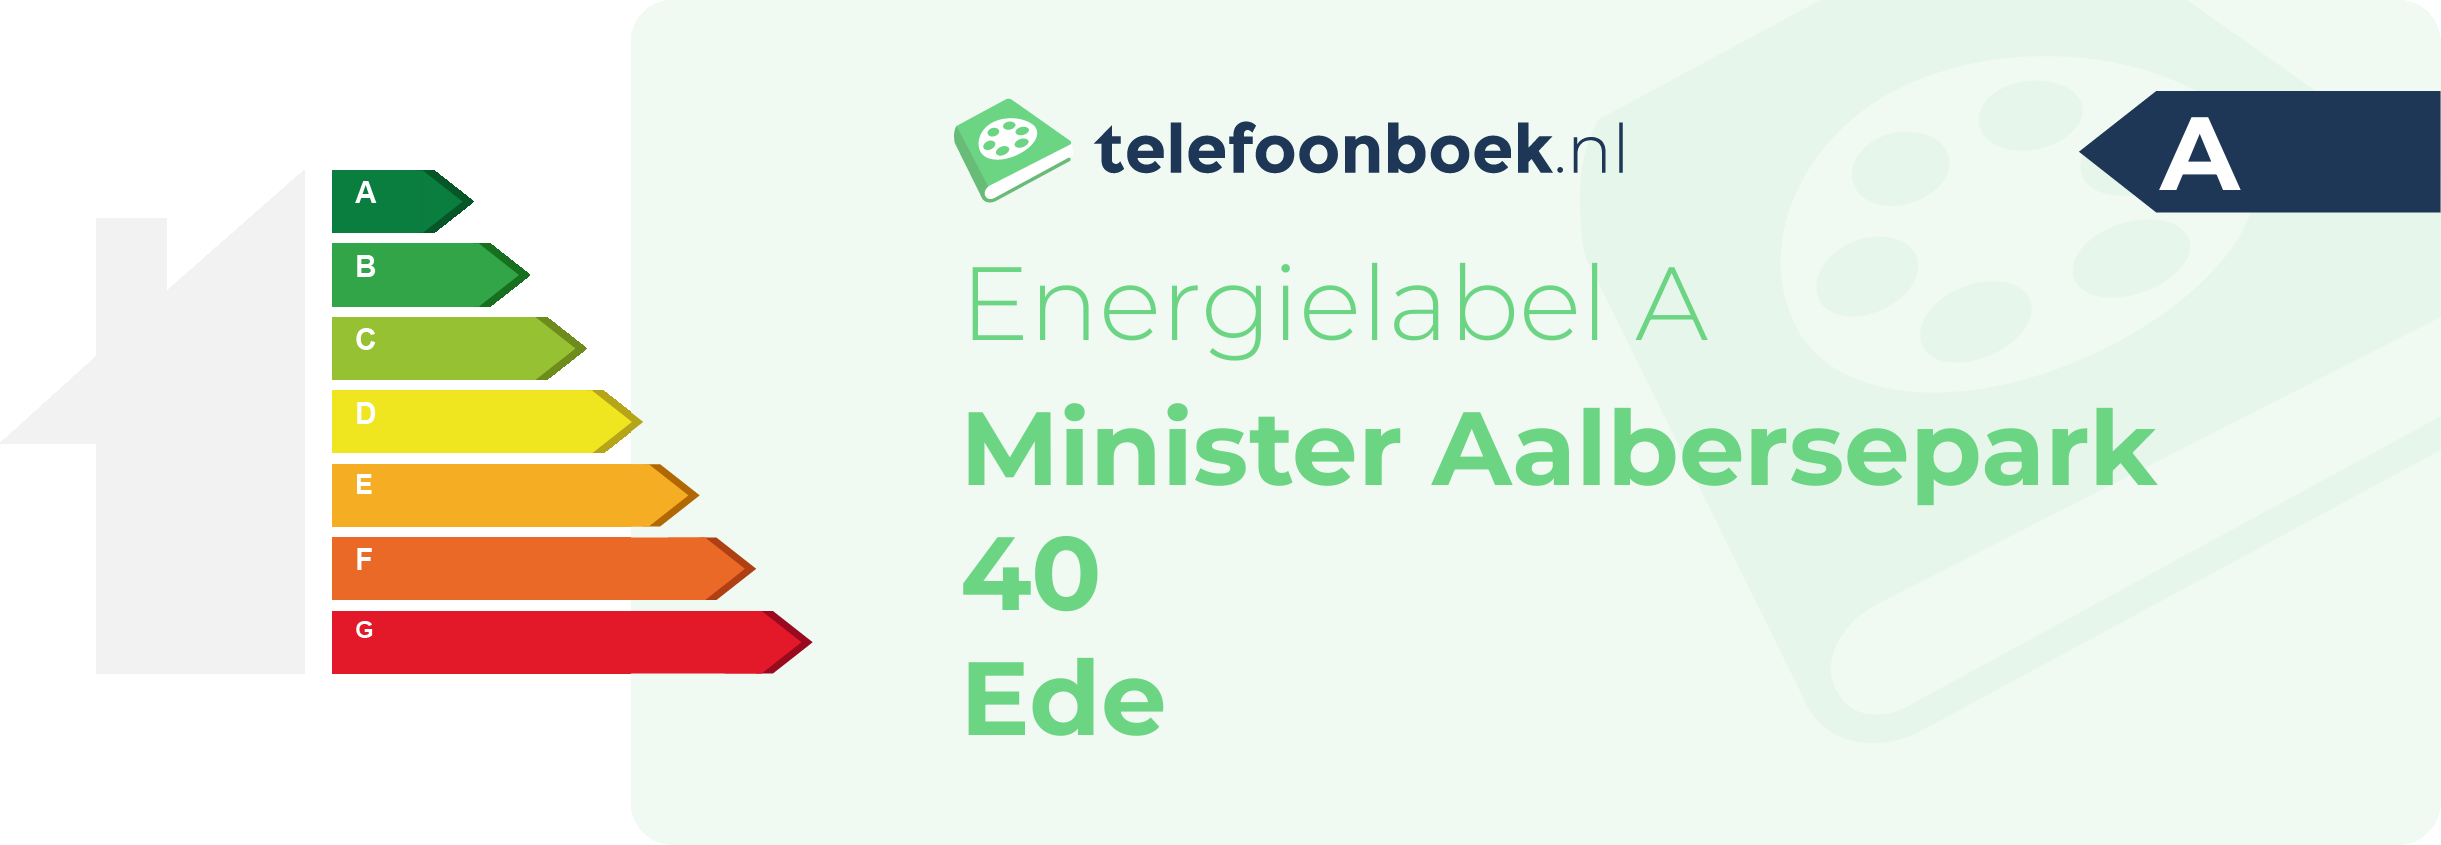 Energielabel Minister Aalbersepark 40 Ede